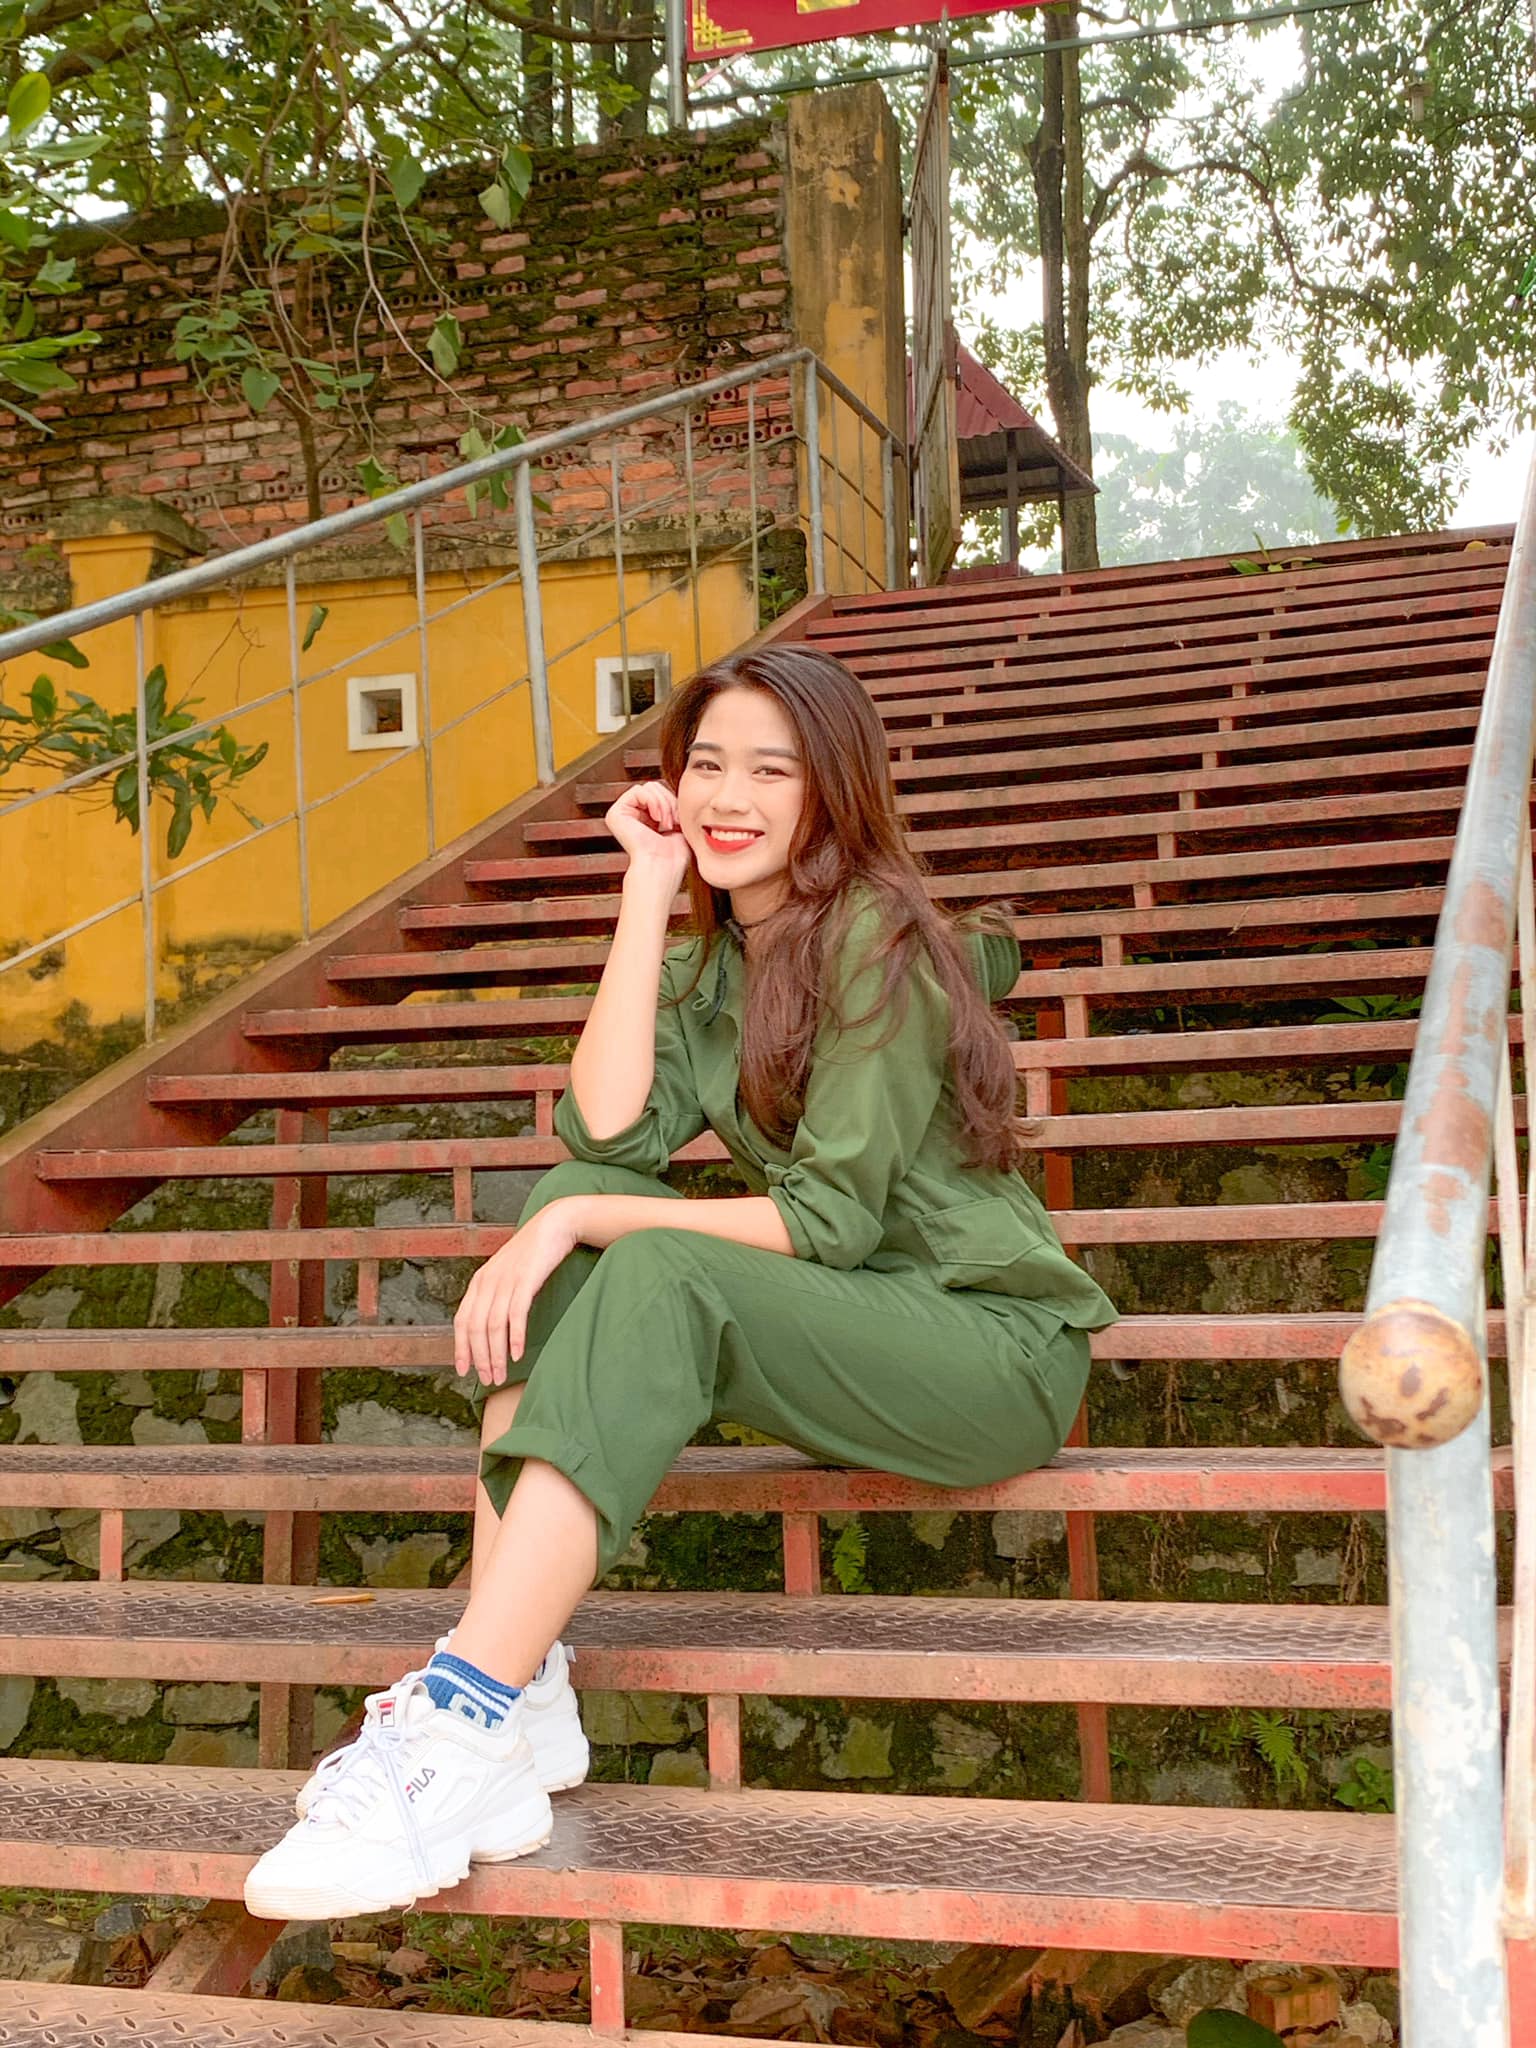 Hoa hậu Đỗ Thị Hà khoe thành tích học tập, hé lộ chức vụ quan trọng trong lớp - Ảnh 4